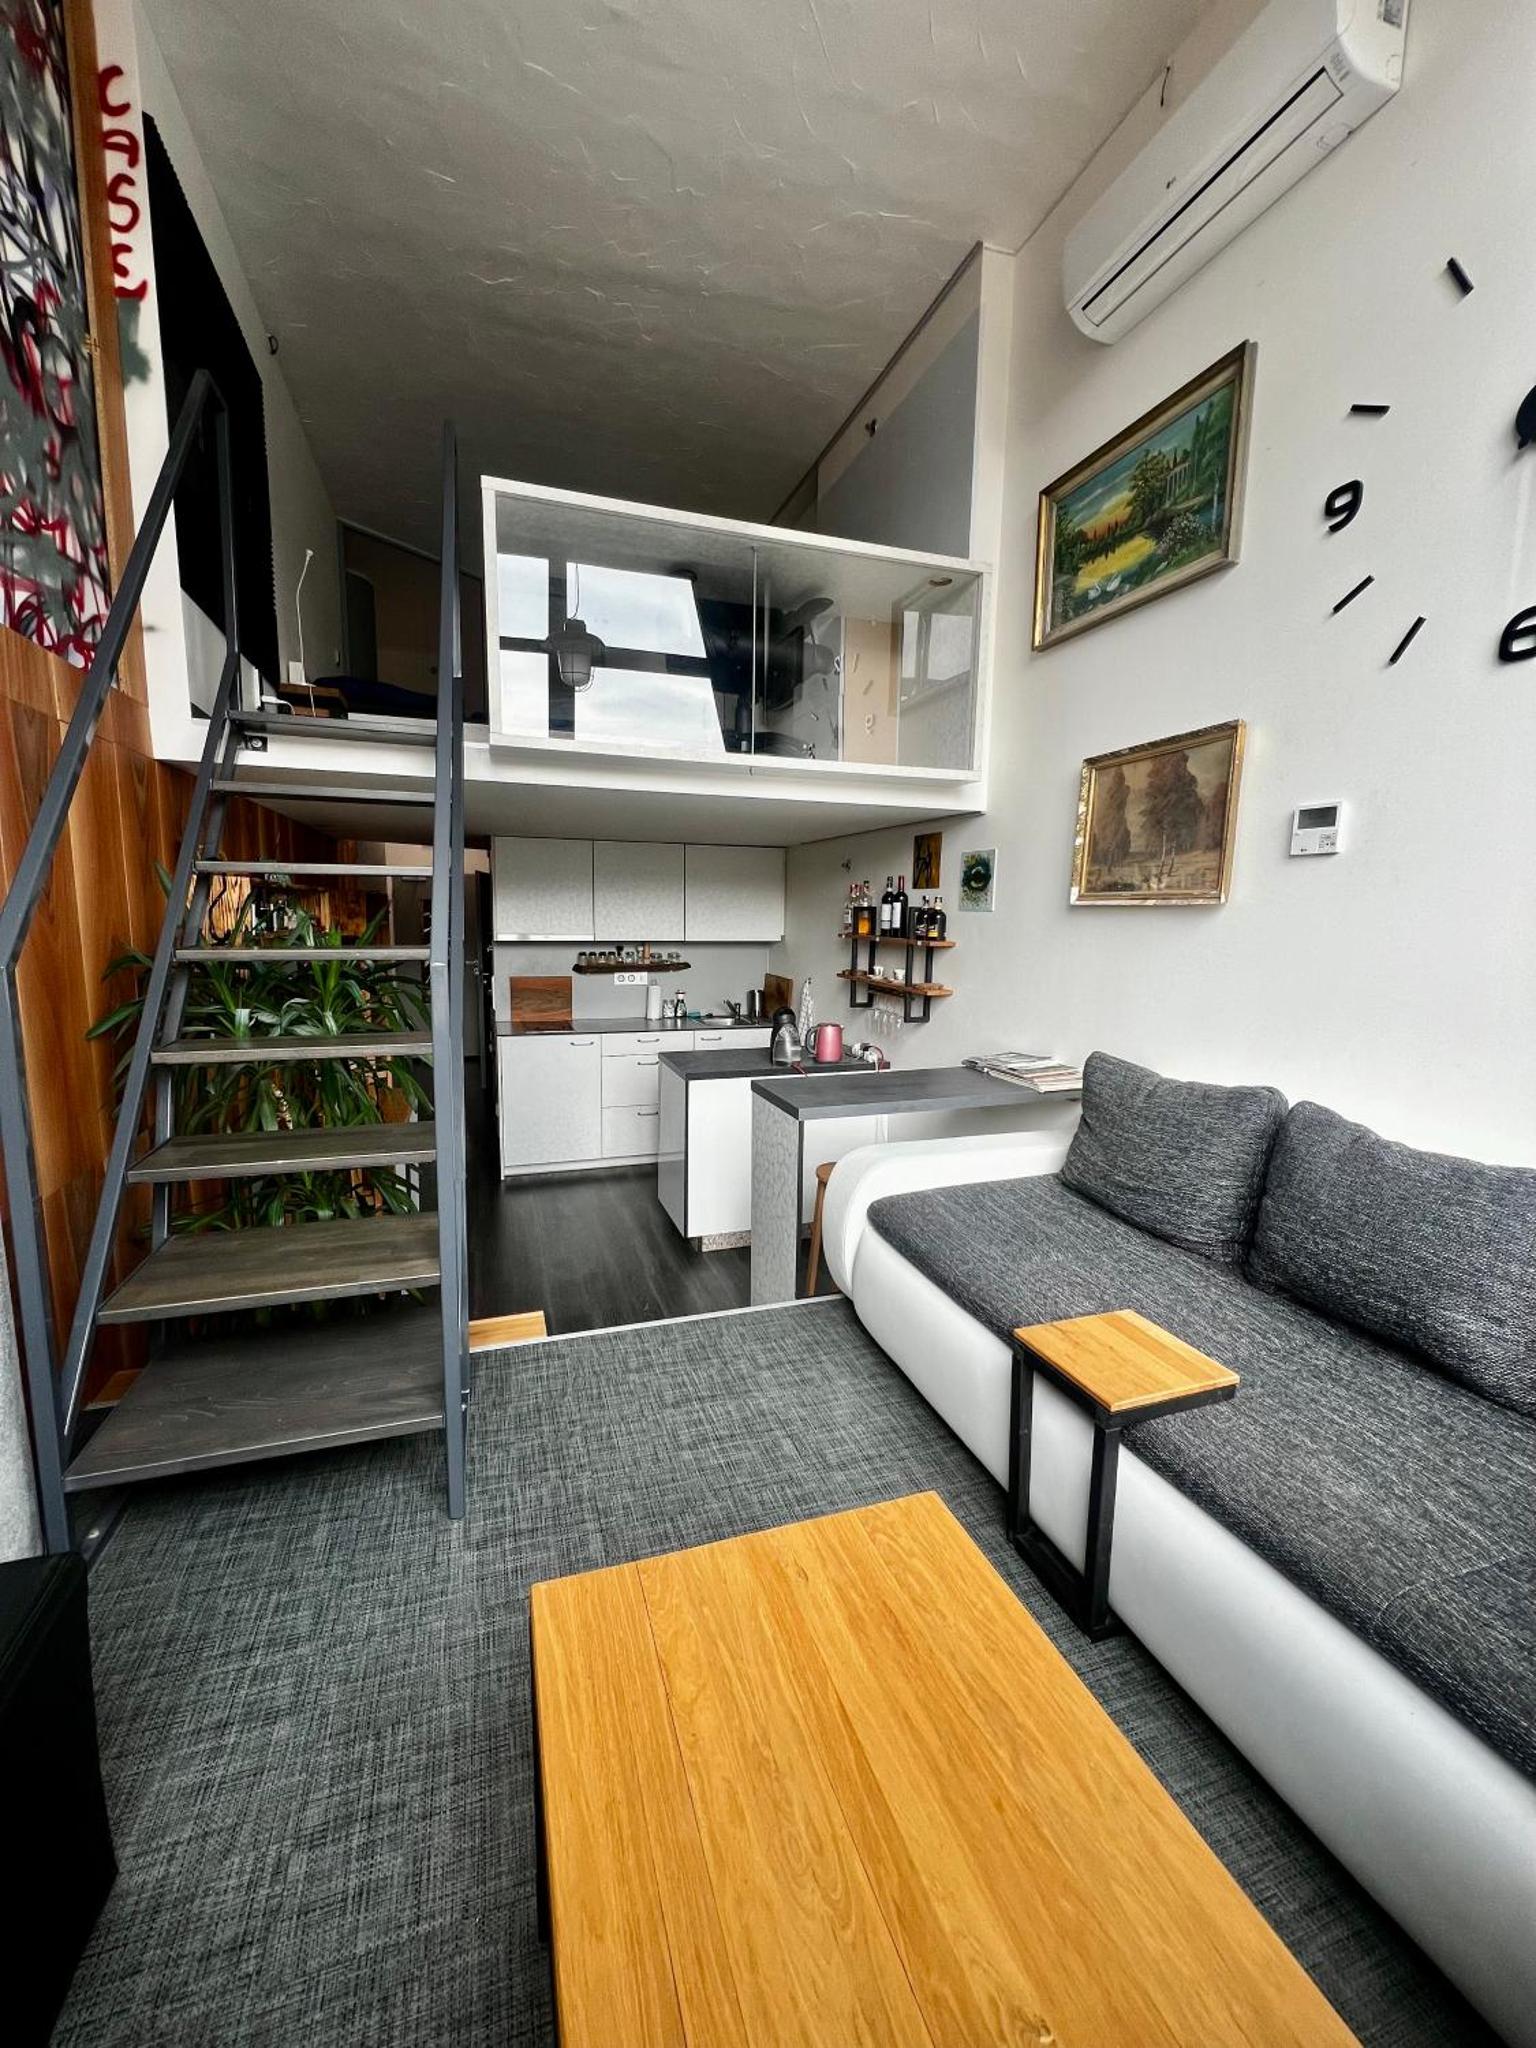 1 bedroom loft apartment